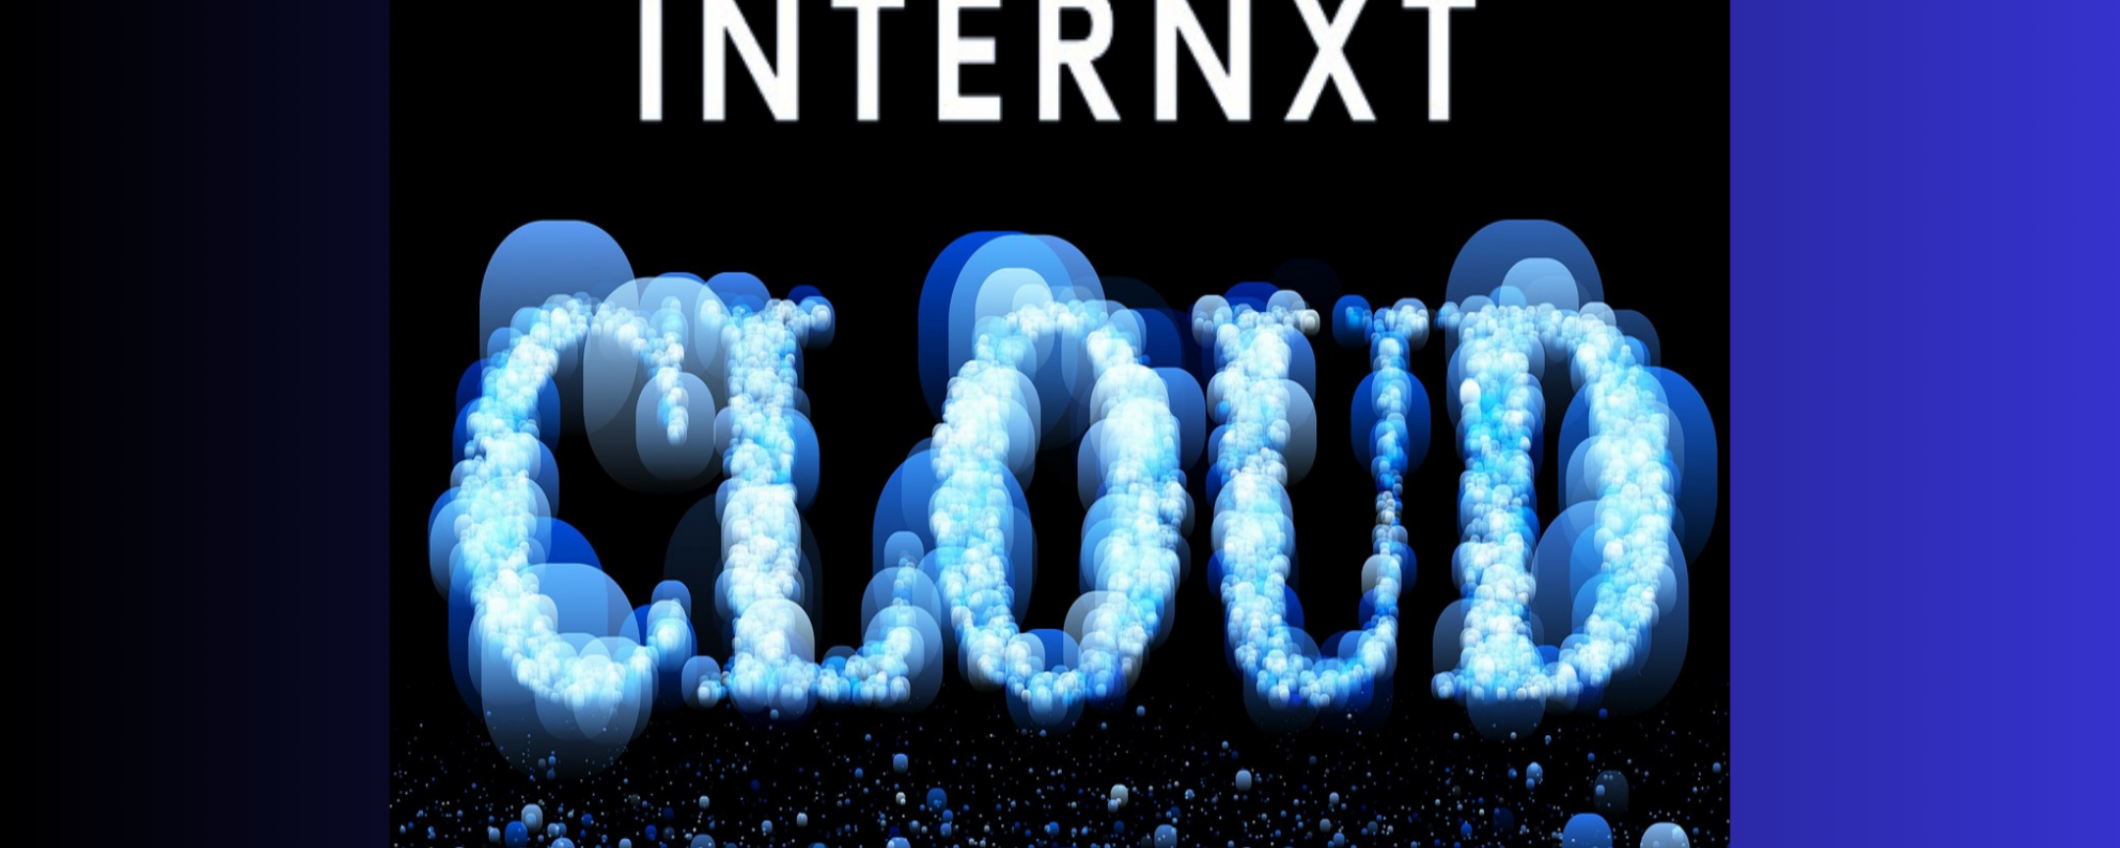 Internxt: piani mensili, annuali e a vita per garantire la sicurezza dei tuoi file